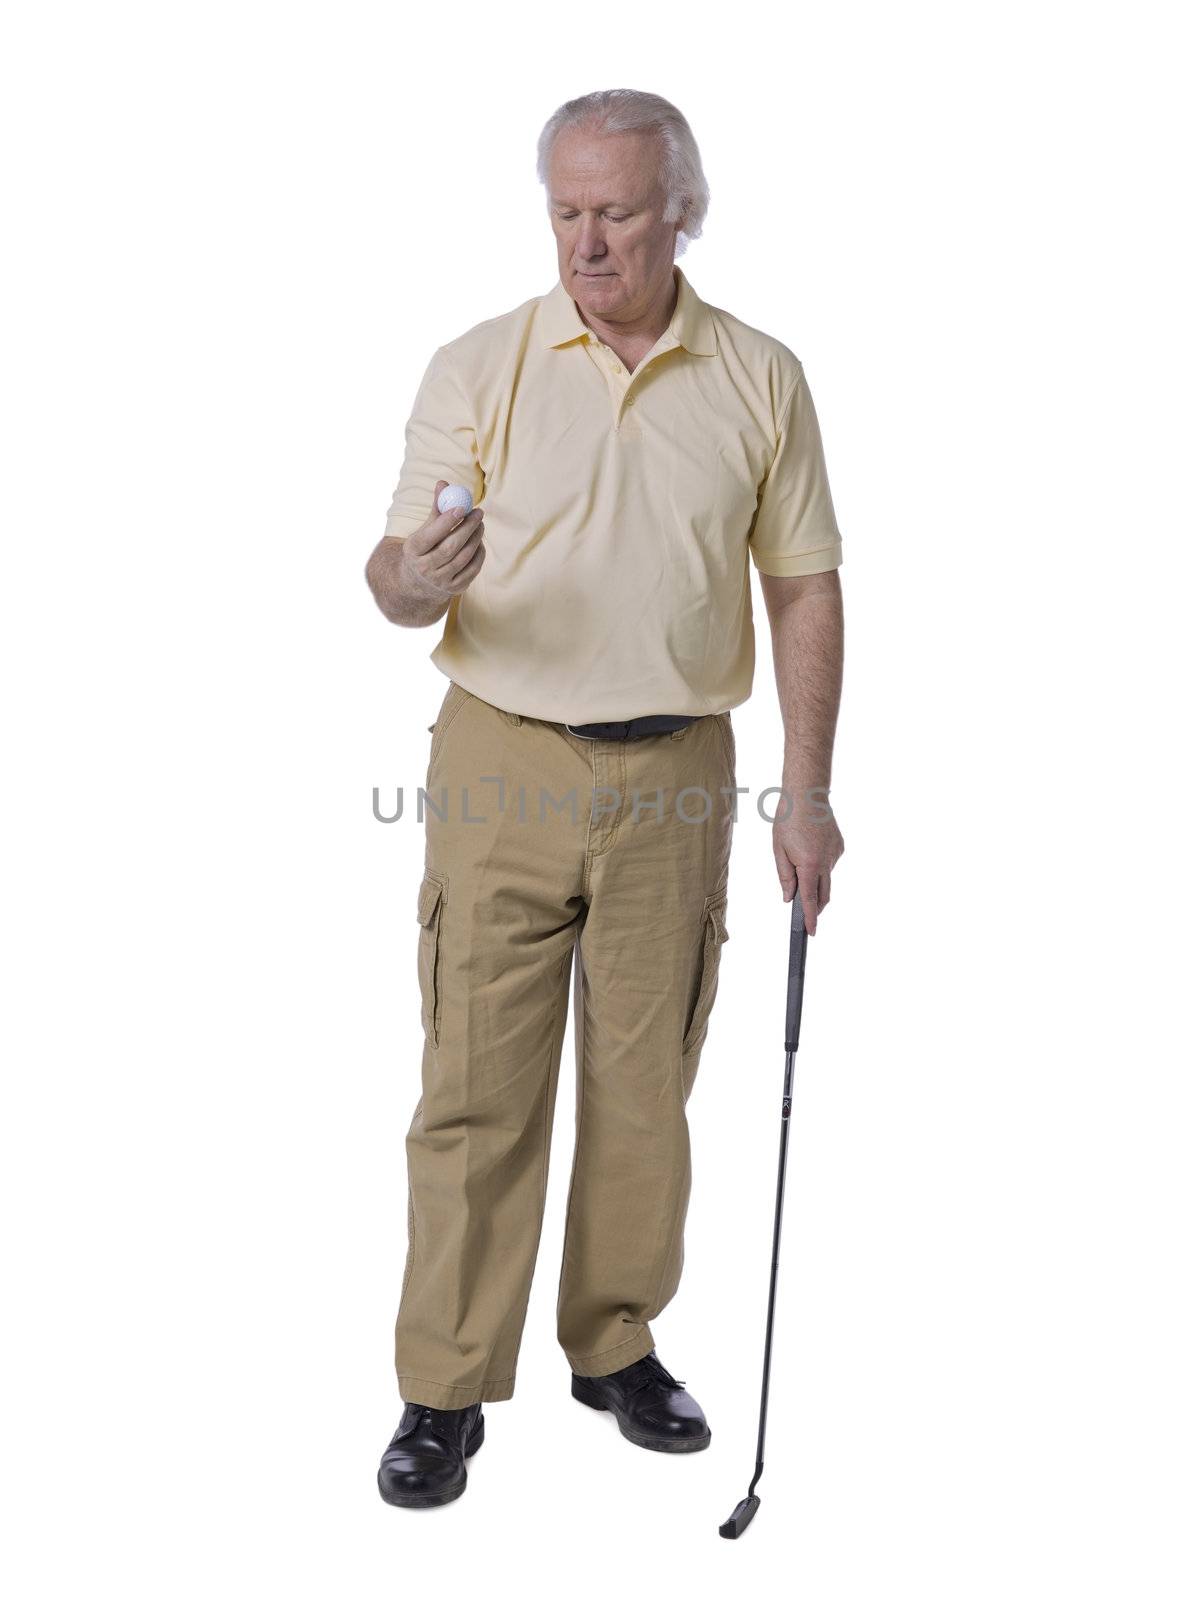 Full length portrait of old man golfer holding golf ball against white background